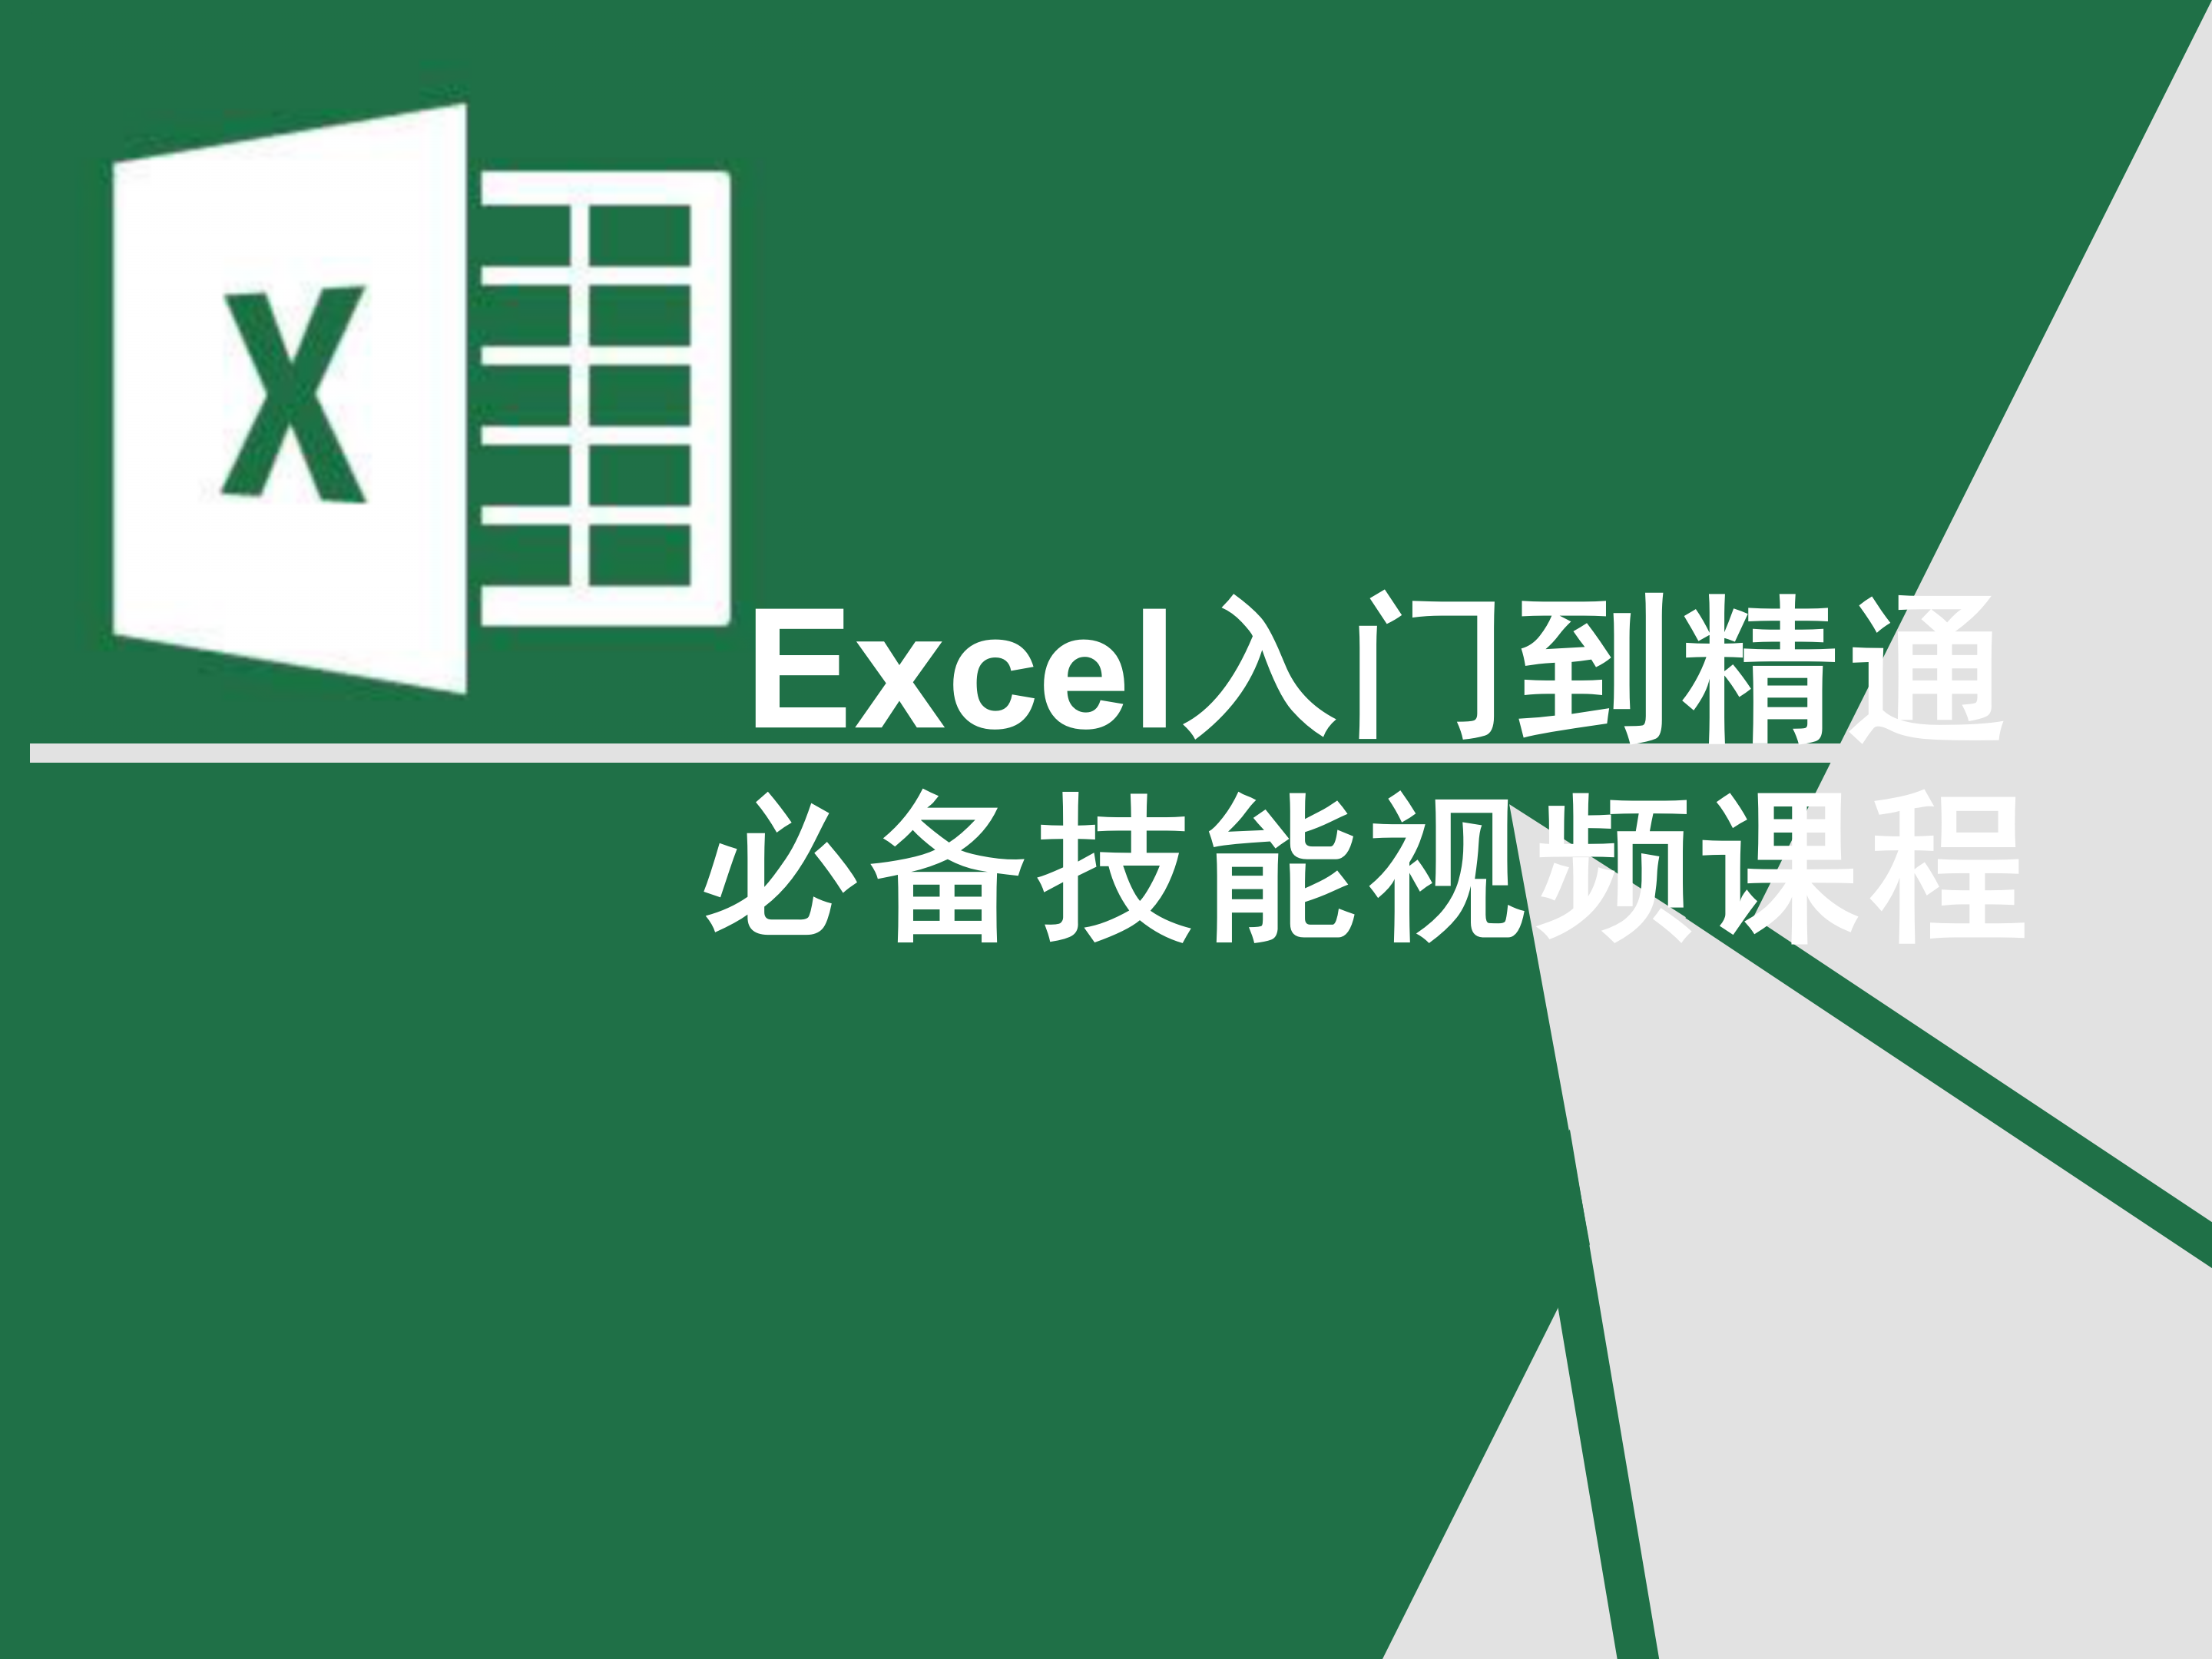 Excel基础与提升必备技能视频课程